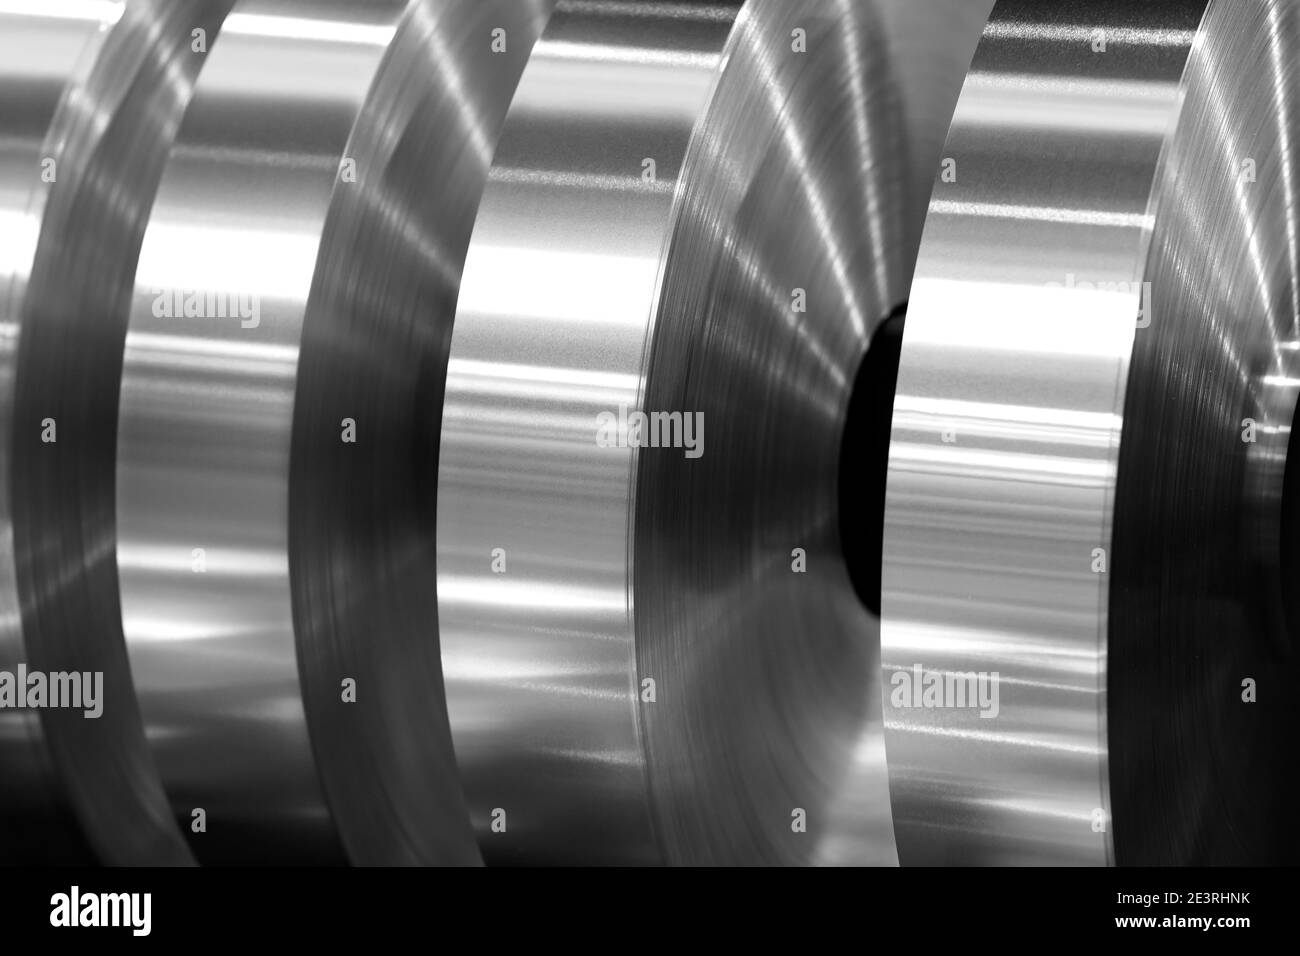 bobines finales de feuille d'aluminium après morsure sur la machine de l'axe, photo en noir et blanc Banque D'Images